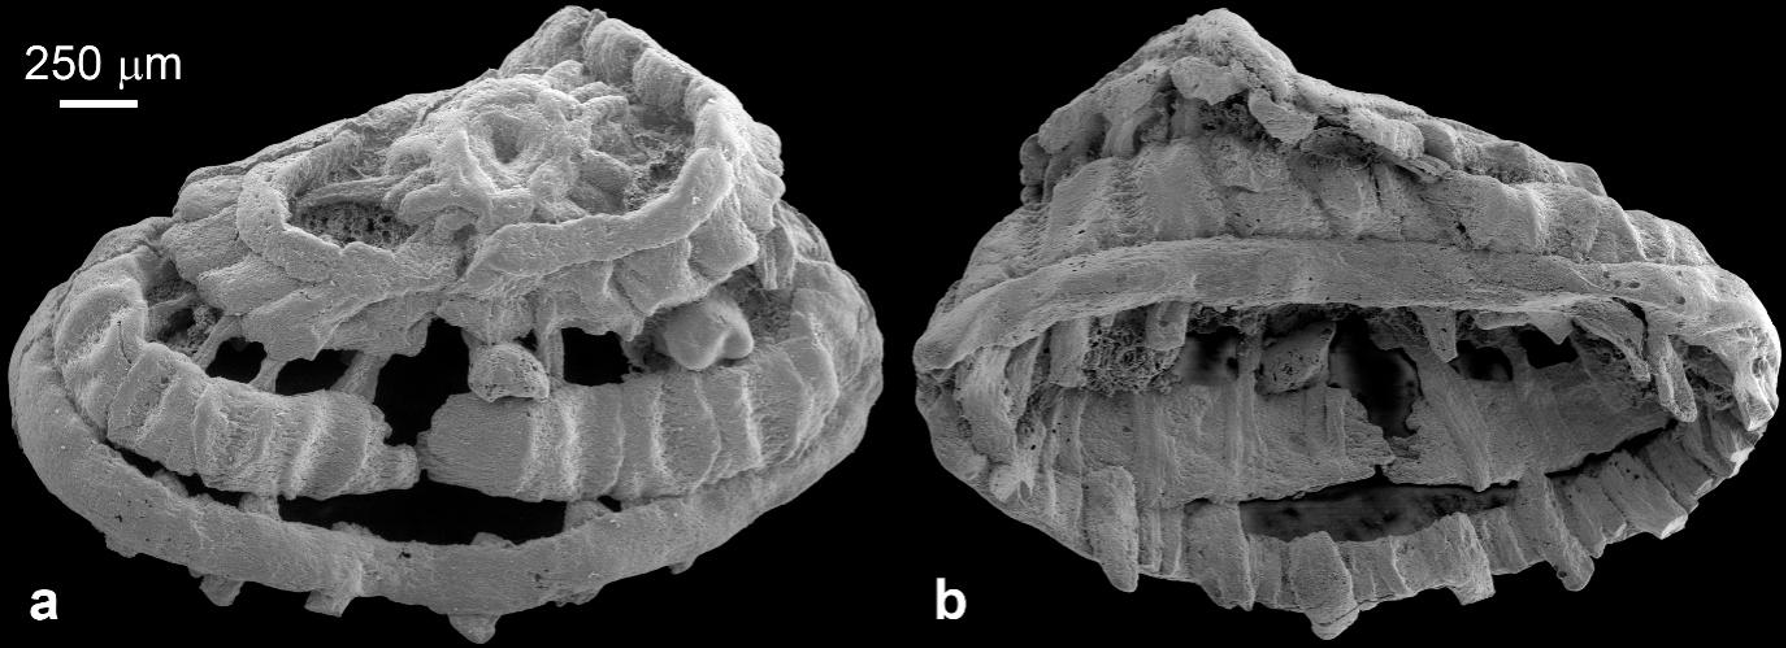 5.35亿年前的肌肉化石揭秘环神经动物的翻吻行为—新闻—科学网